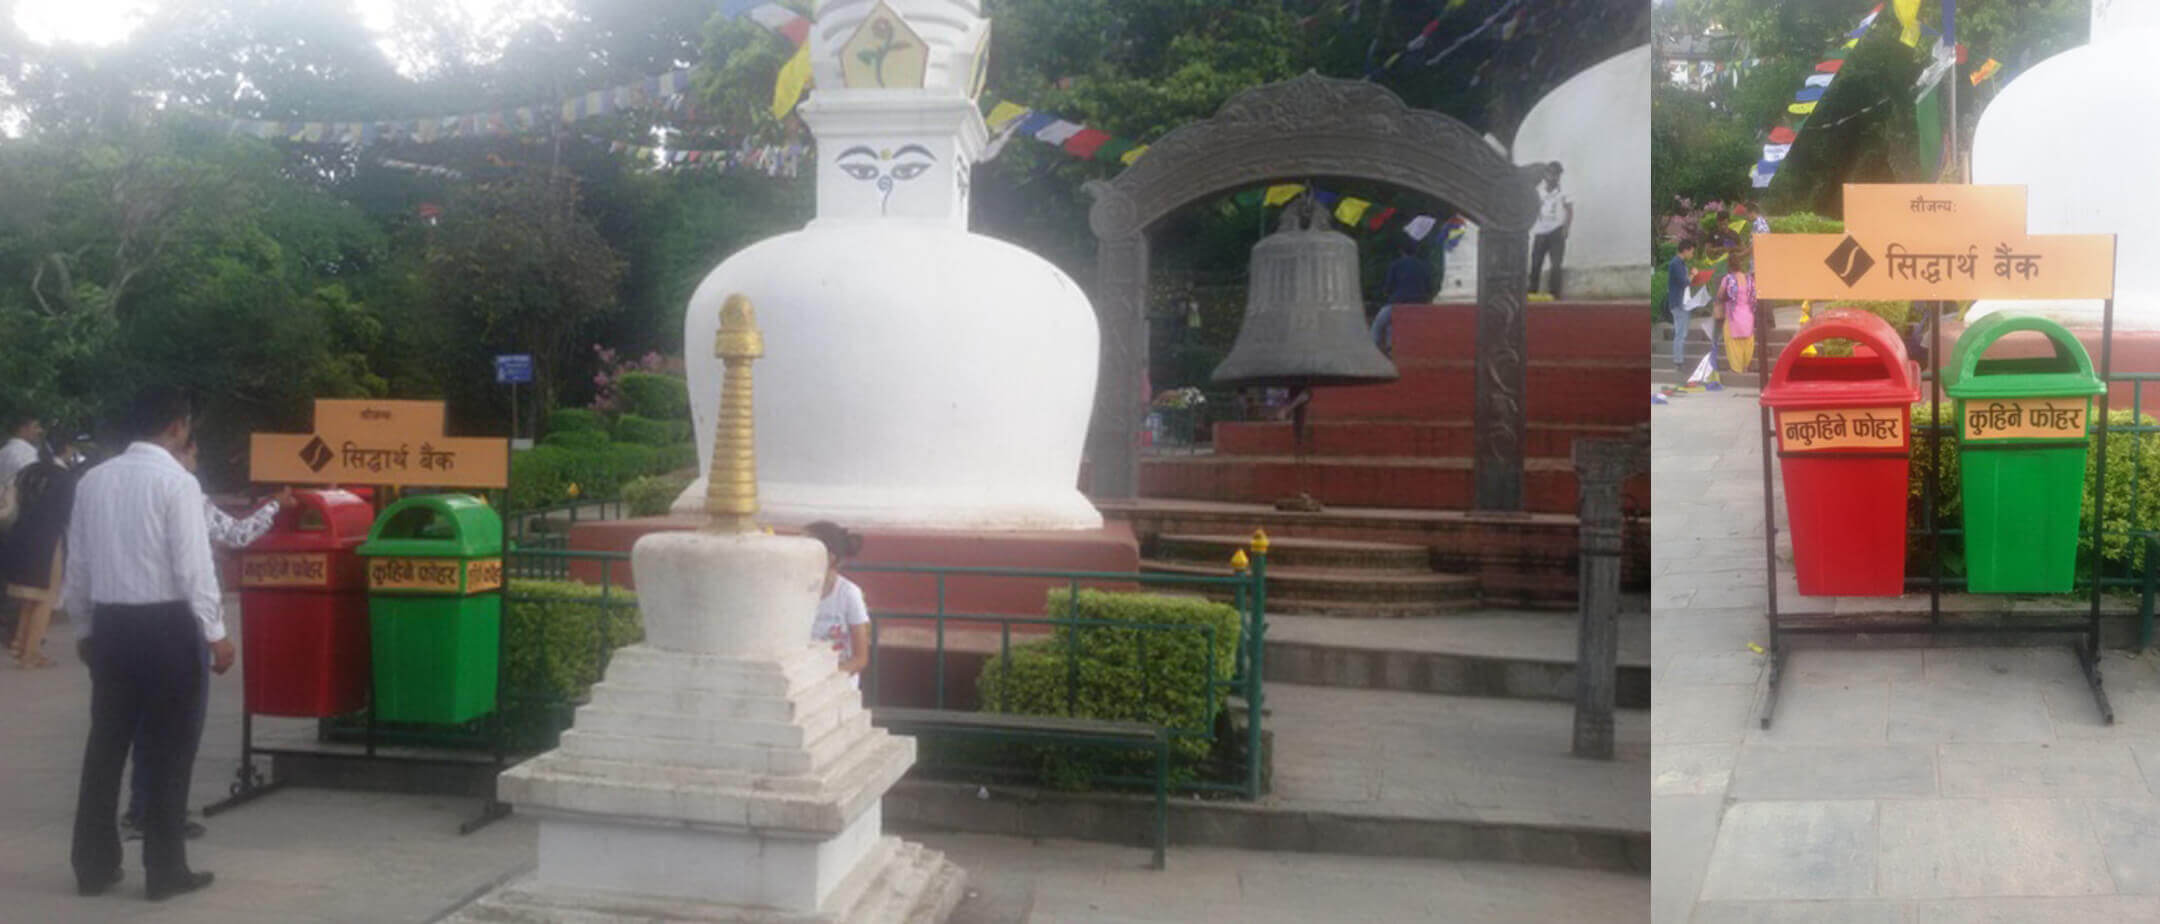 Placement of Dustbin Set at Swoyambhu Nath Stupa